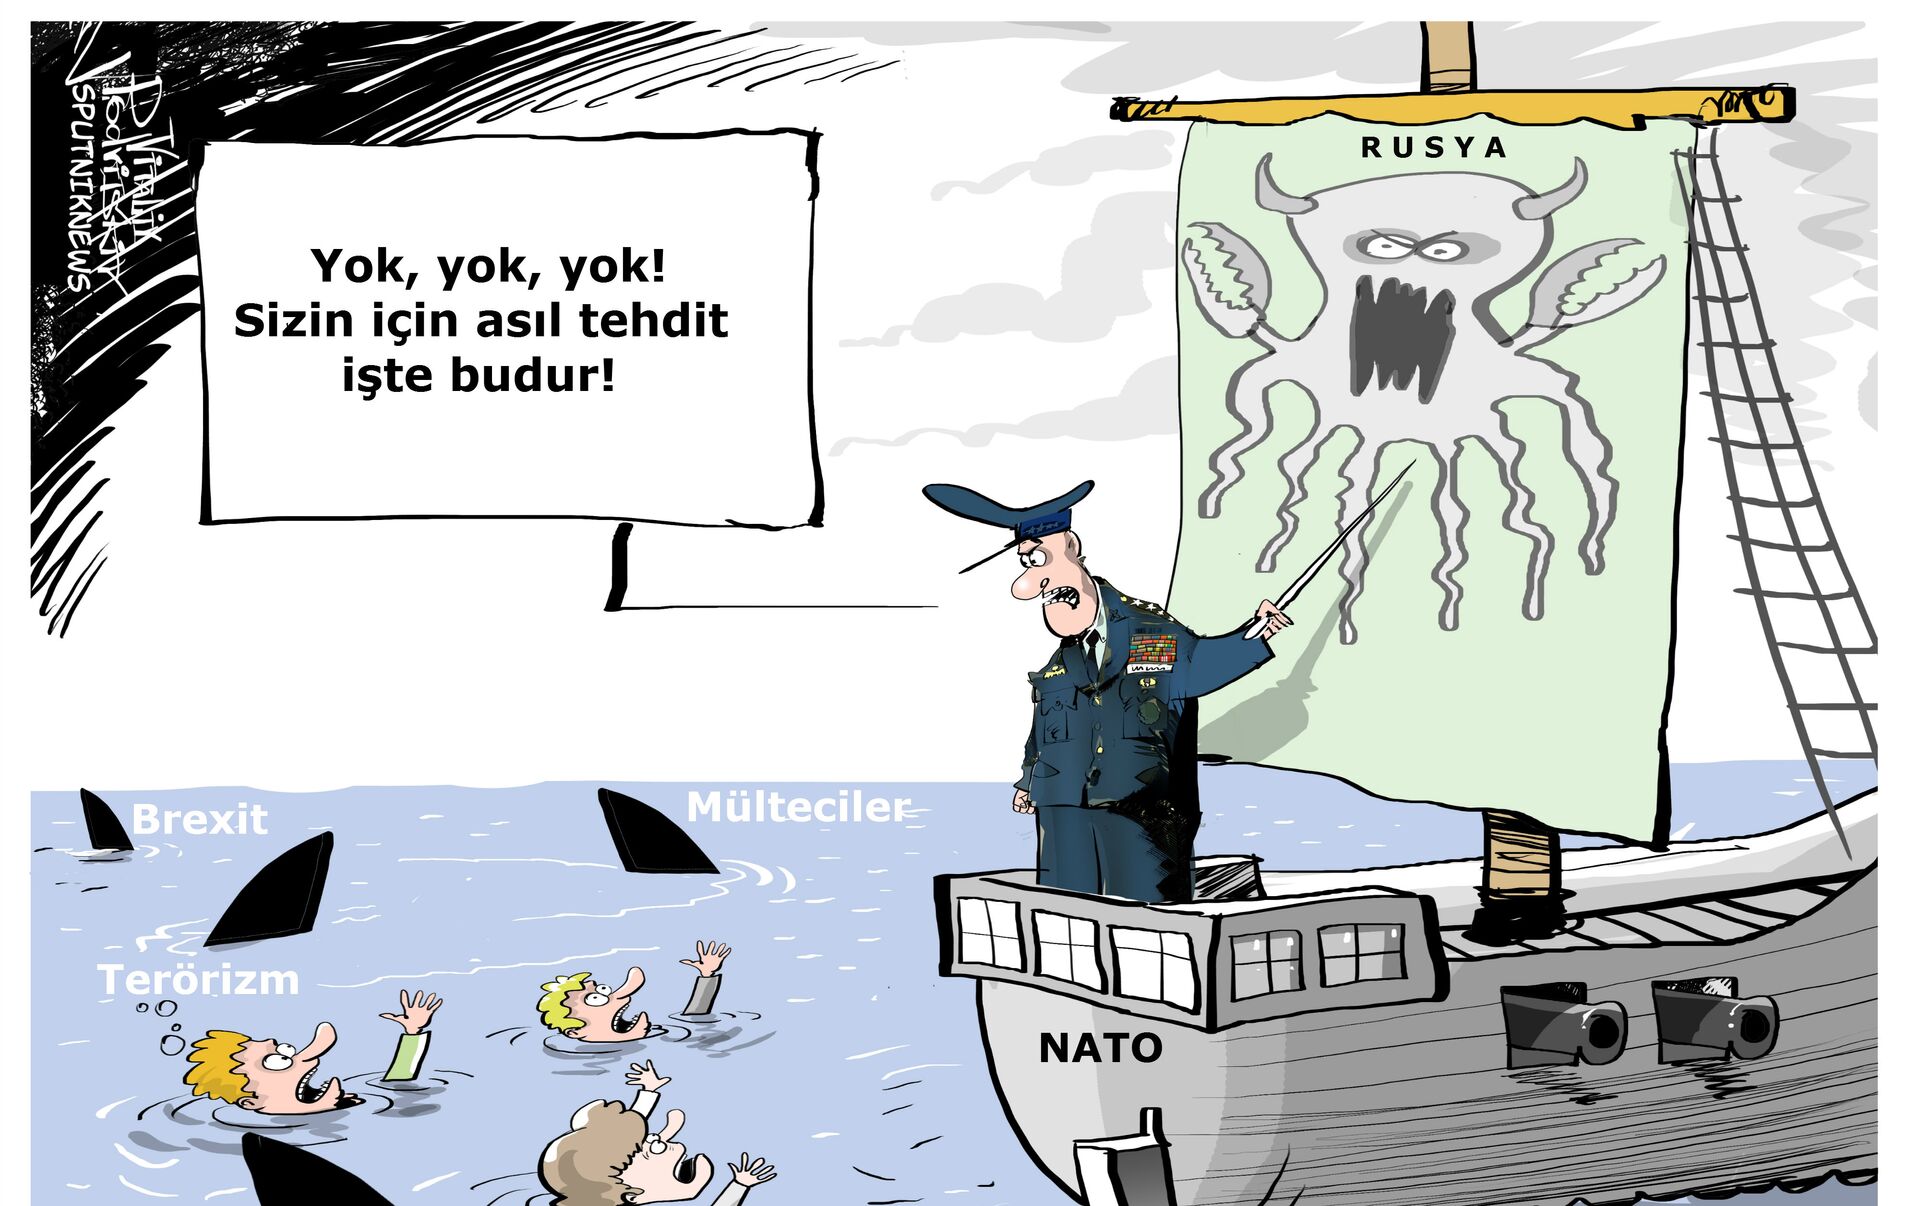 Нато мем. Столтенберг карикатура. Столтенберг-НАТО карикатура. Столтенберг НАТО мемы. Мемы про НАТО.